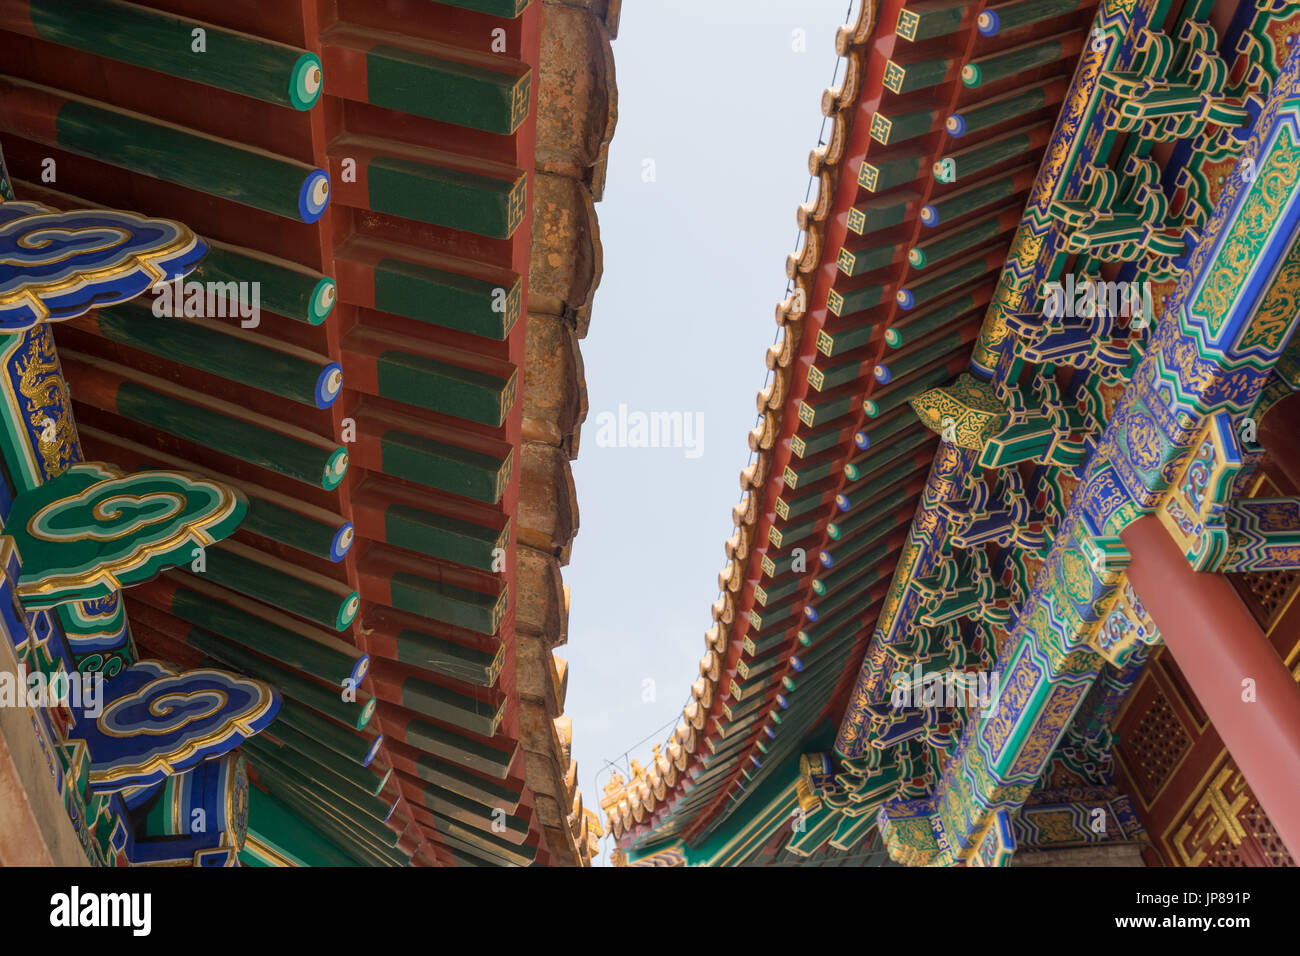 Closeup mostrando el intrincado diseño del techo y aleros del edificio del Palacio de Verano en Pekín, China Foto de stock